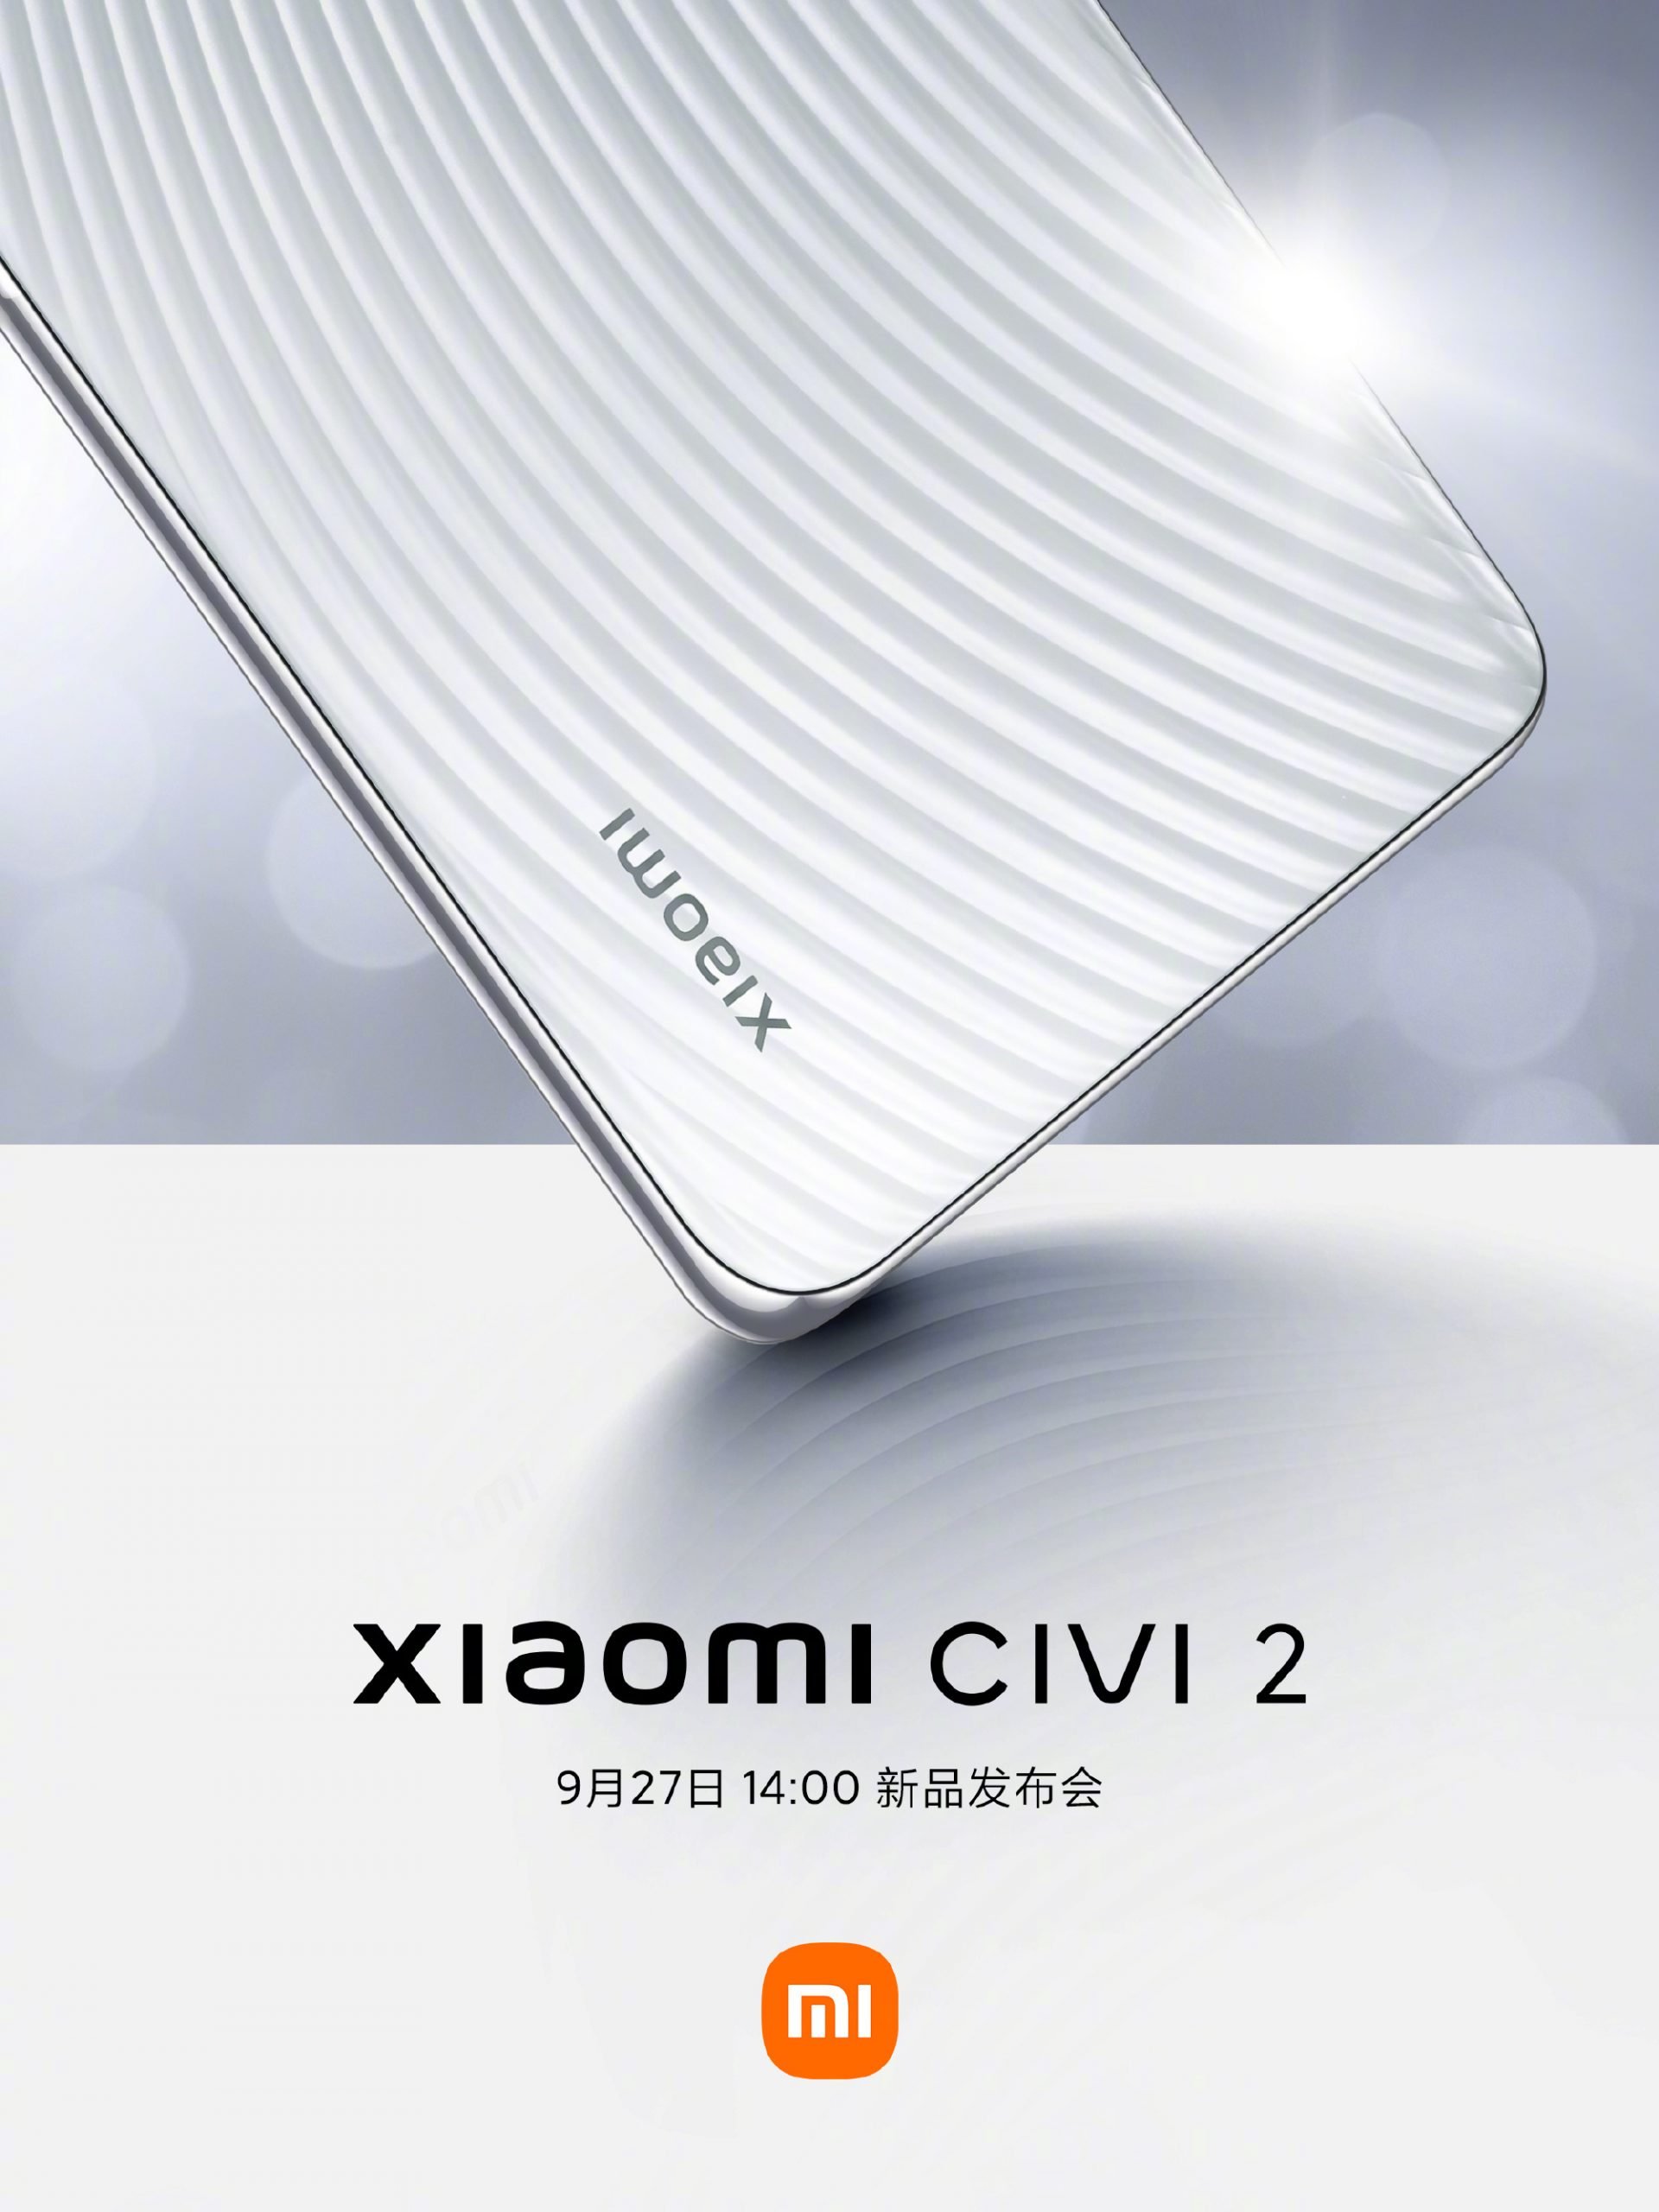 Fecha de lanzamiento del Xiaomi CIVI 2